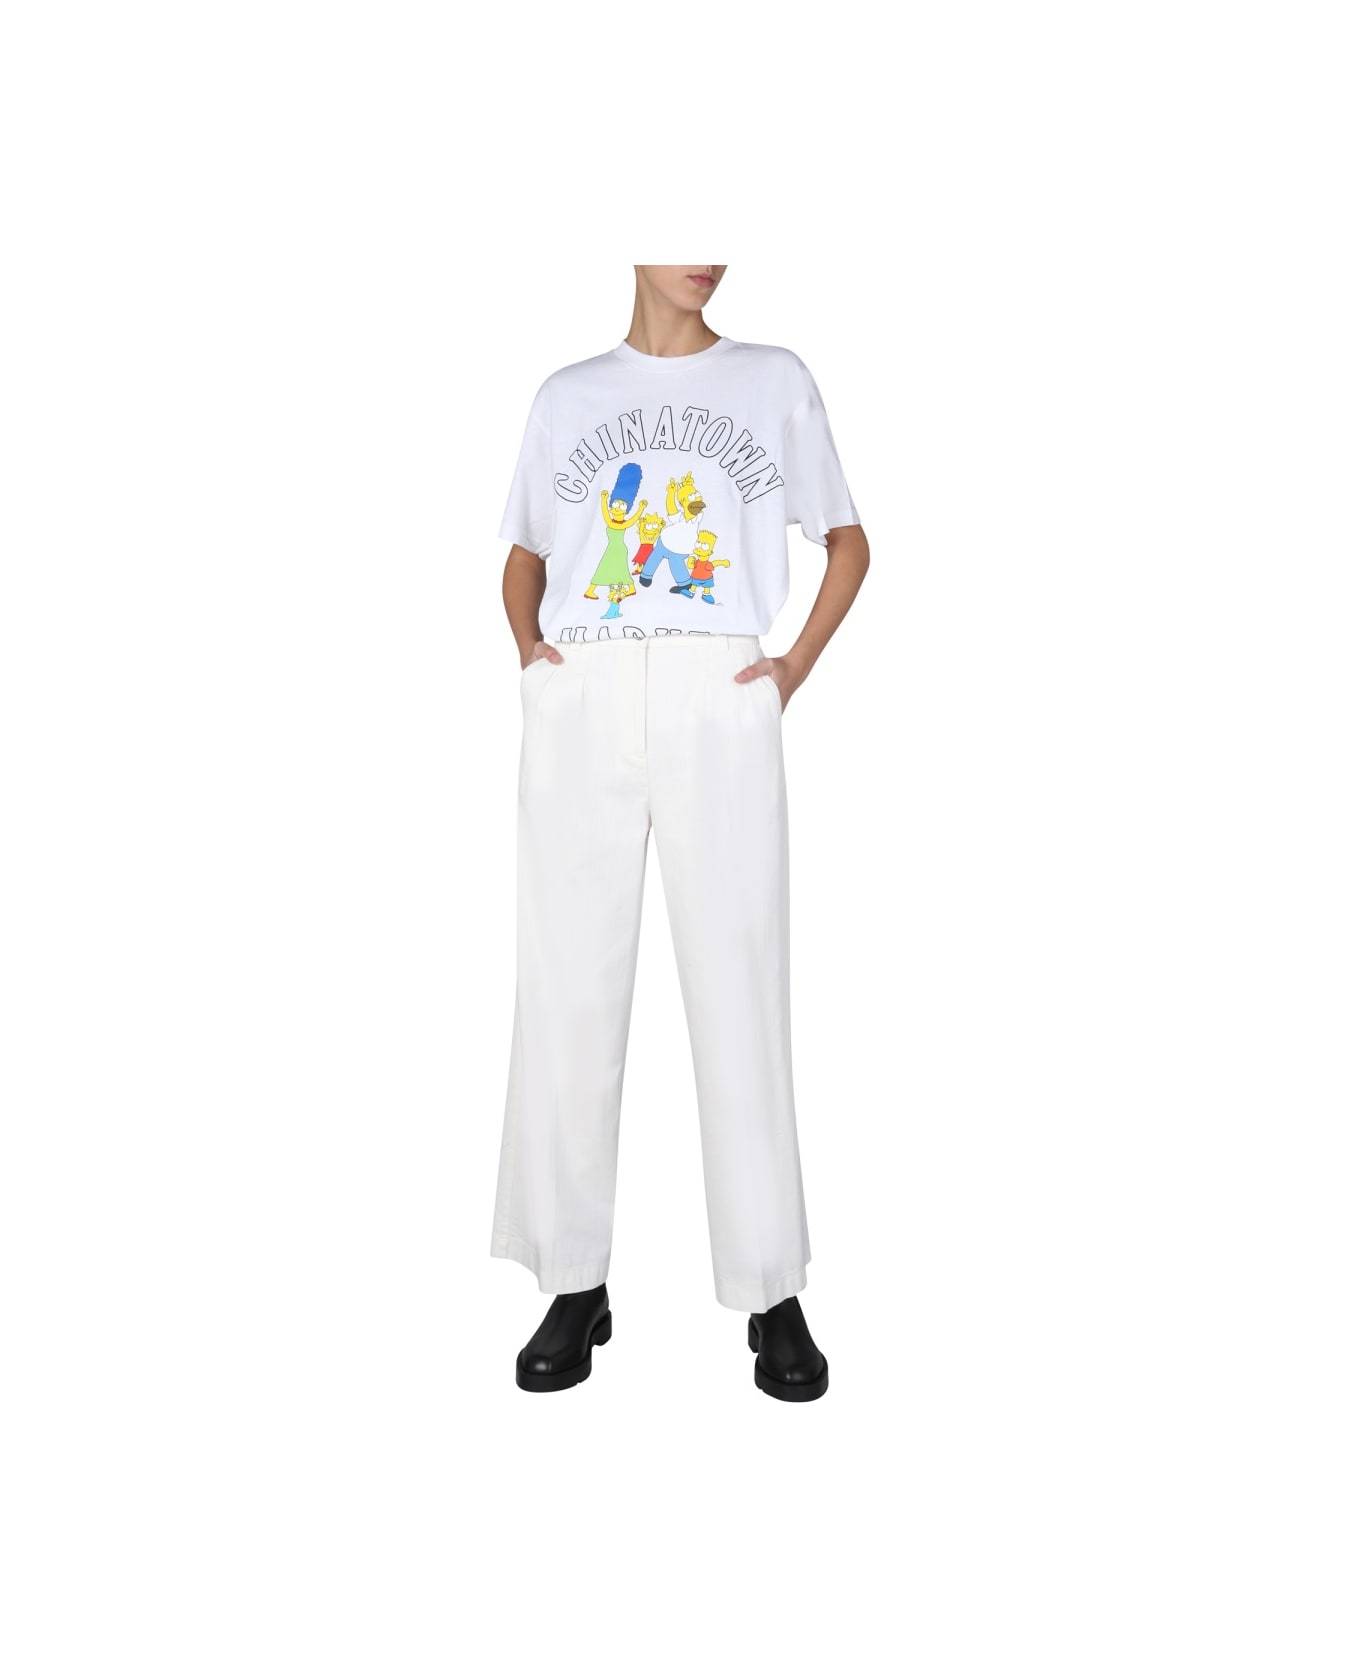 Market "family Simpson" T-shirt - WHITE